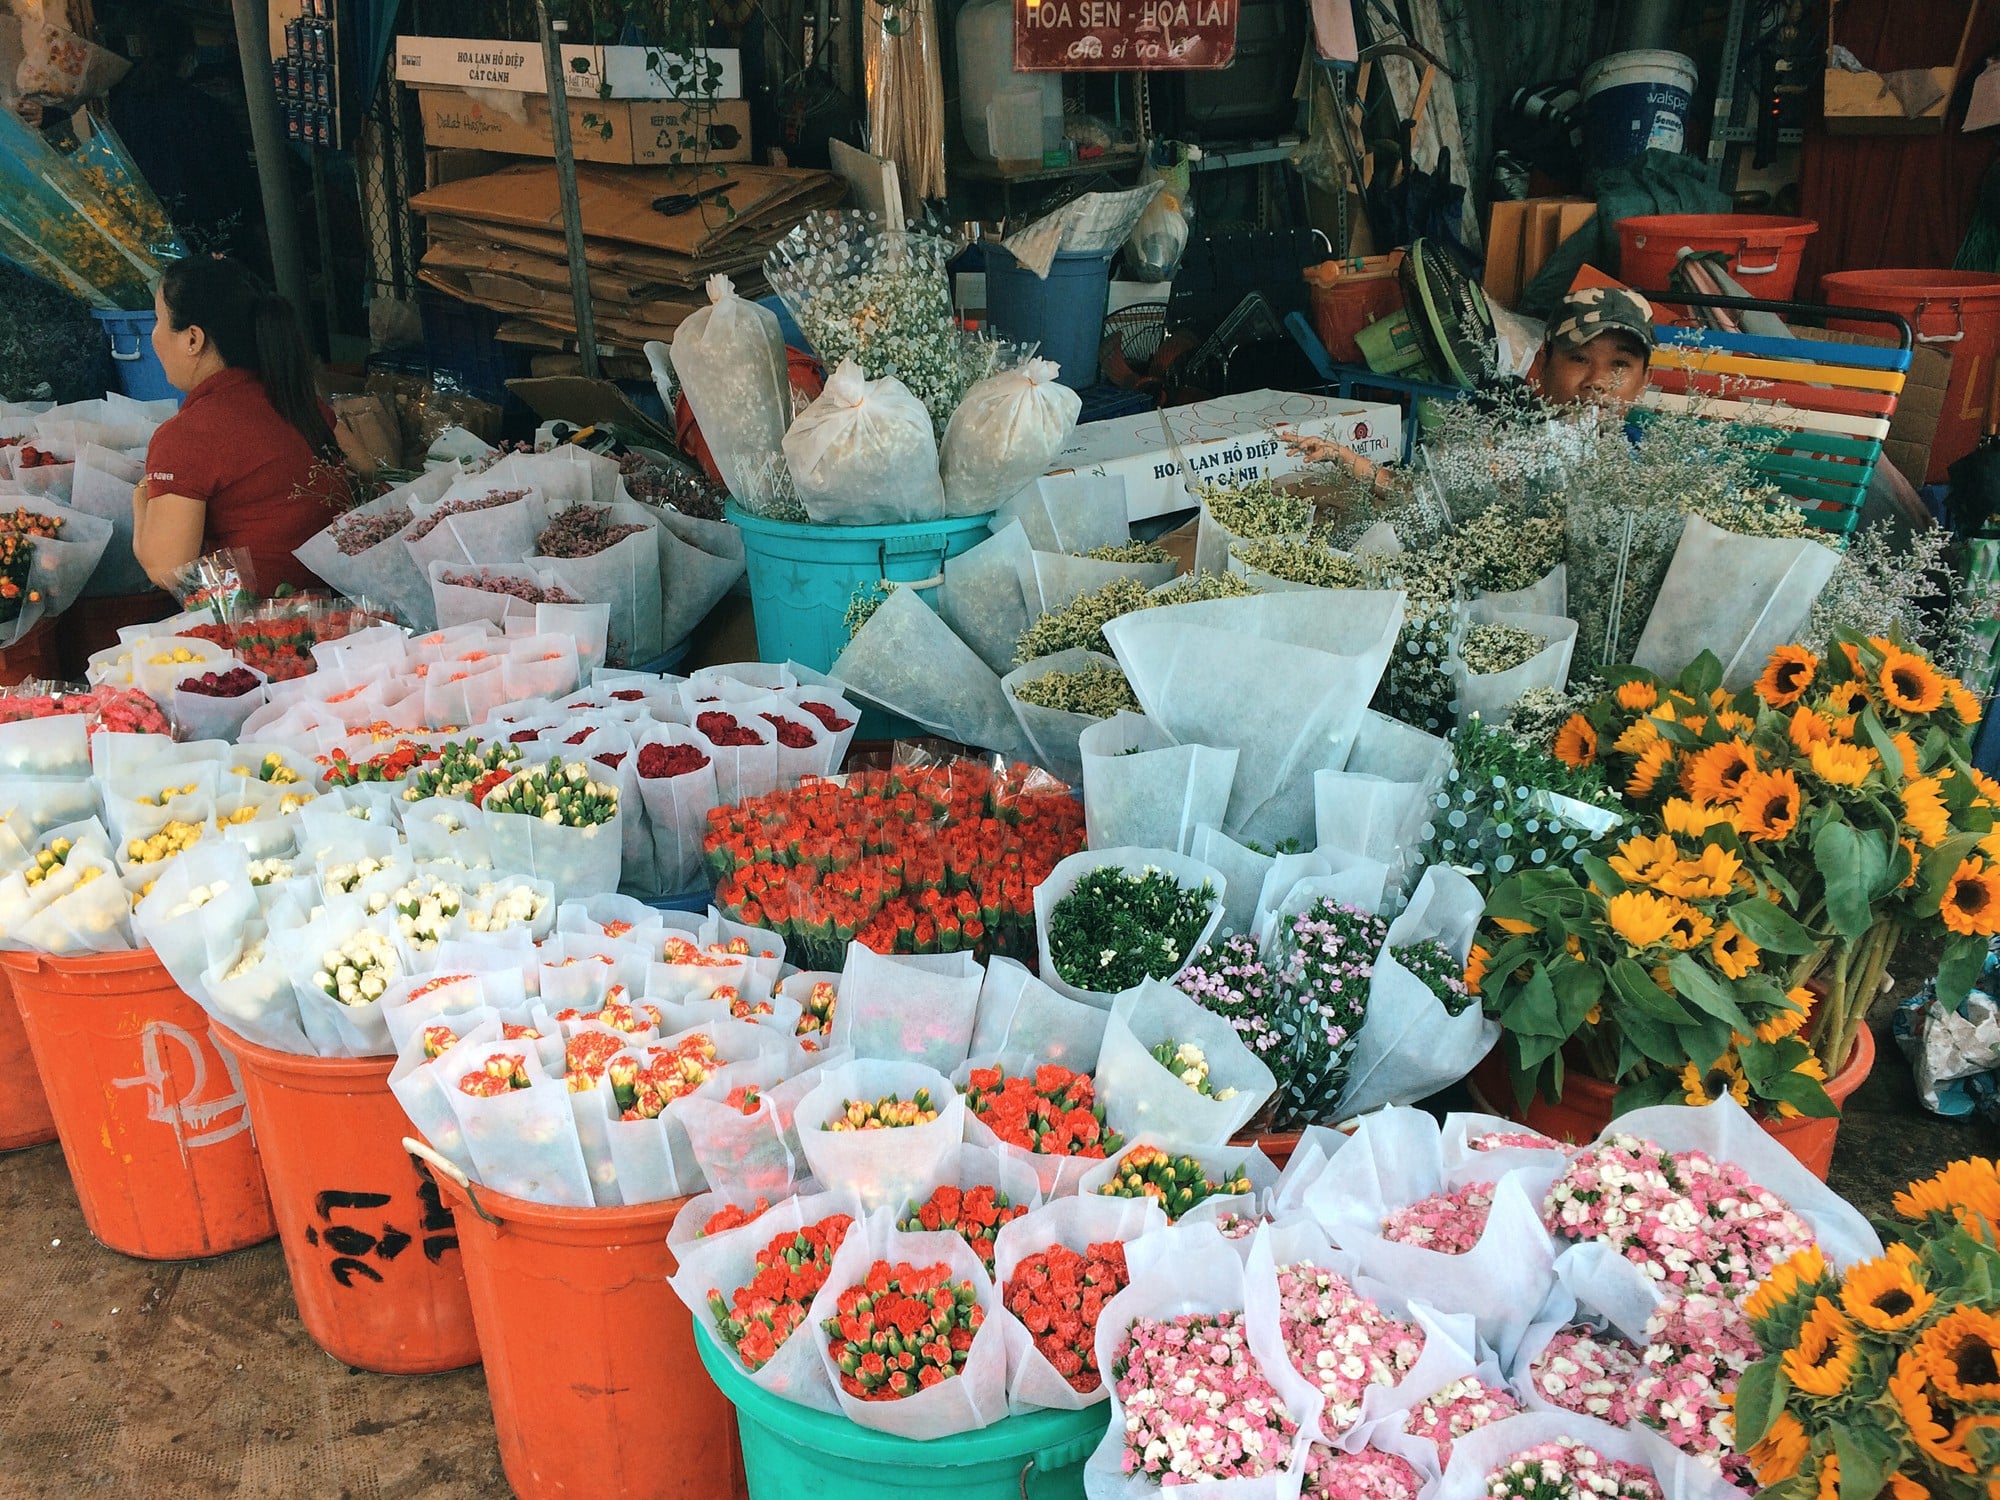 chợ đầu mối Sài Gòn